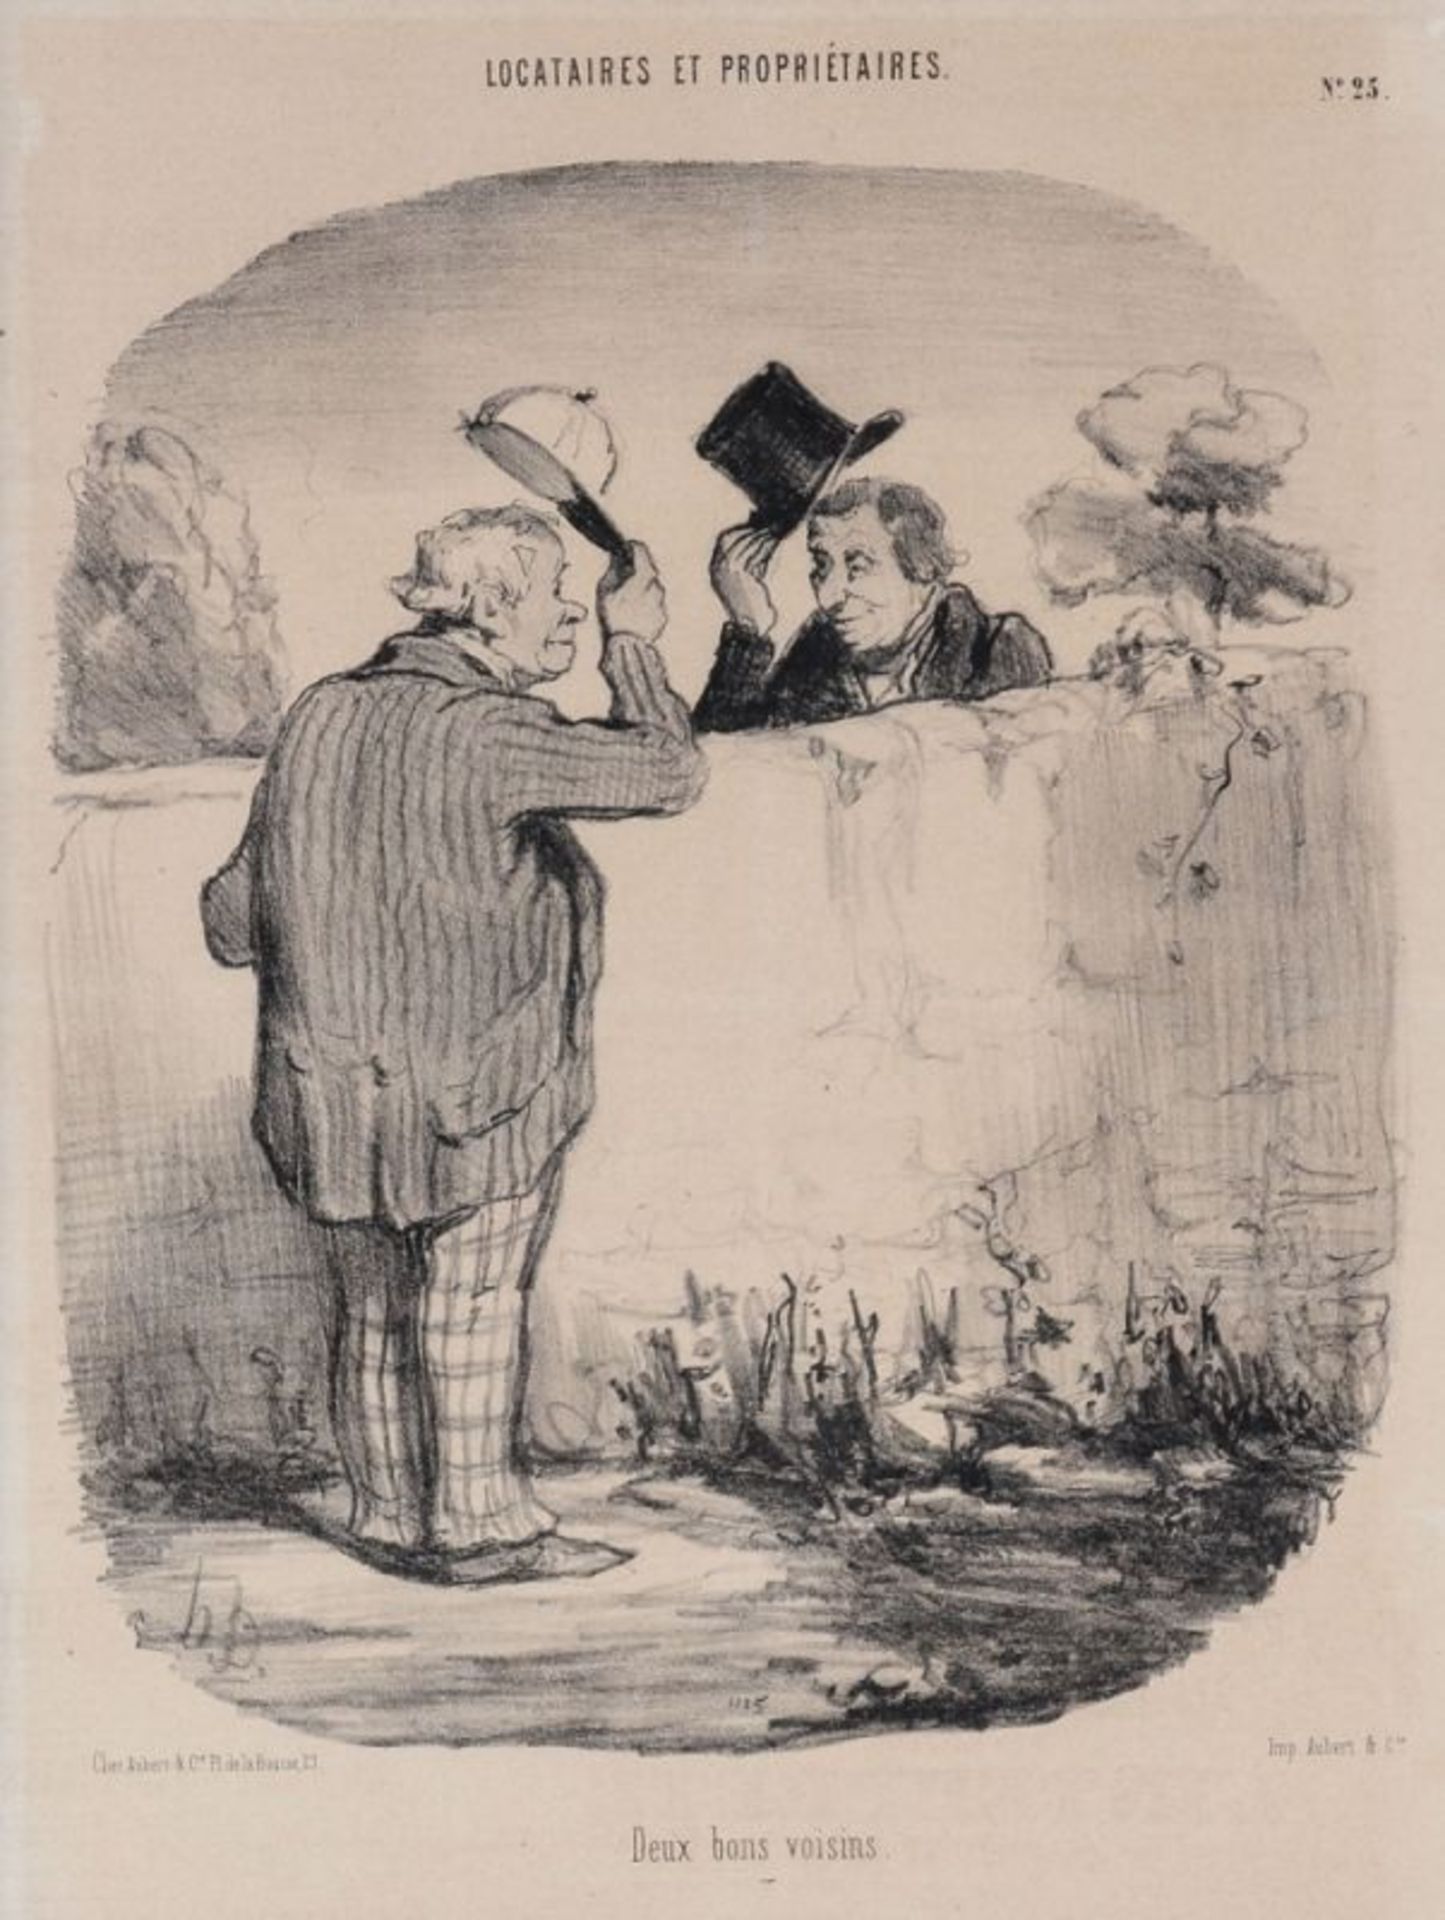 Honoré Daumier 1808 Marseille - 1879 Valmondois - "Deux bons voisins" (Zwei gute Nachbarn, 1